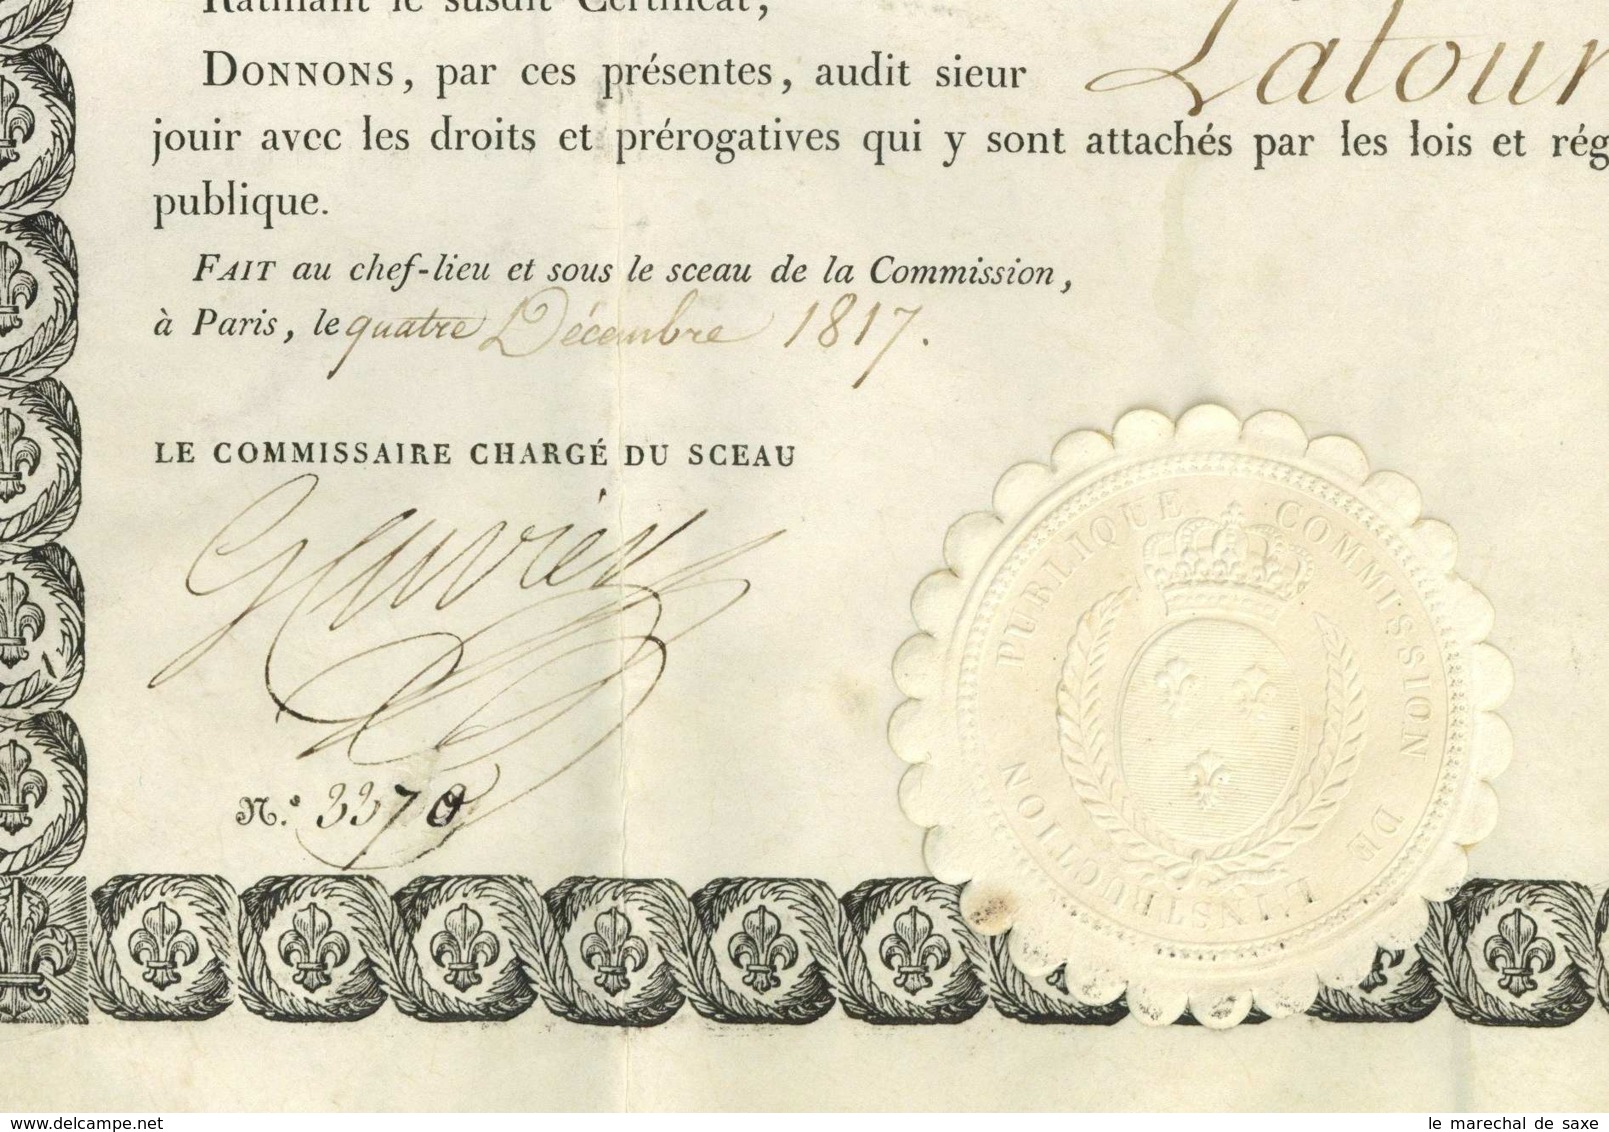 Diplome De Bachelier Es Lettres 1817 Georges CUVIER Royer-Collard Petitot Briancon Latour Grenoble - Diplômes & Bulletins Scolaires